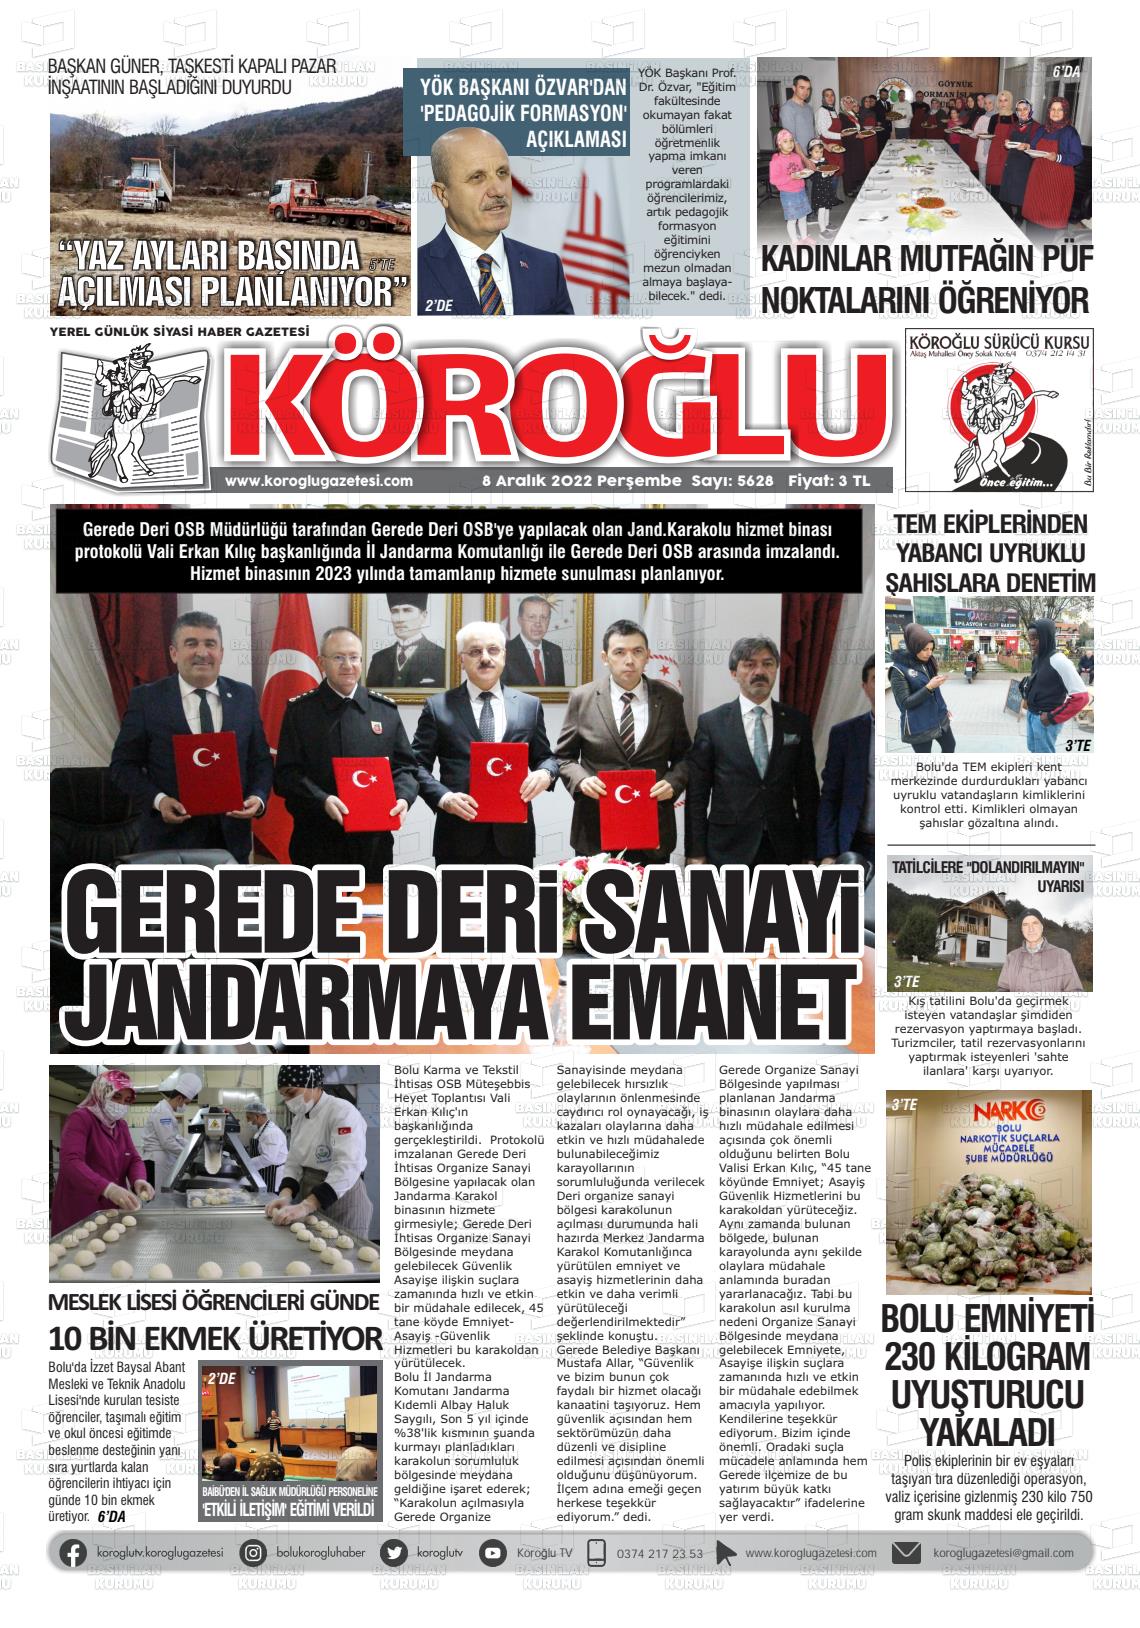 08 Aralık 2022 Köroğlu Gazete Manşeti